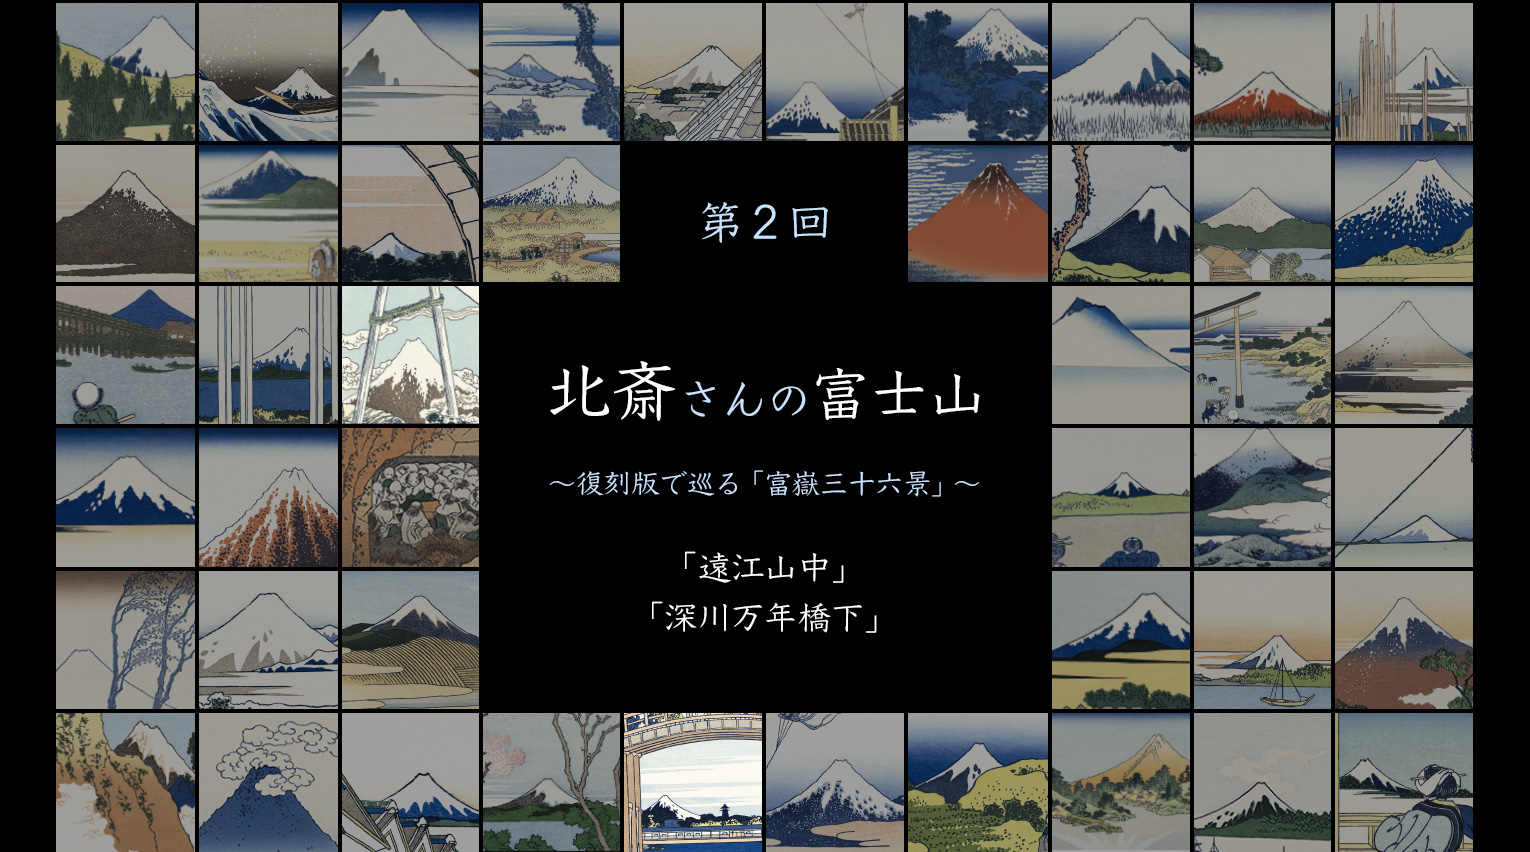 北斎さんの富士山 〜復刻版で巡る「富嶽三十六景」〜 (2)【PR 